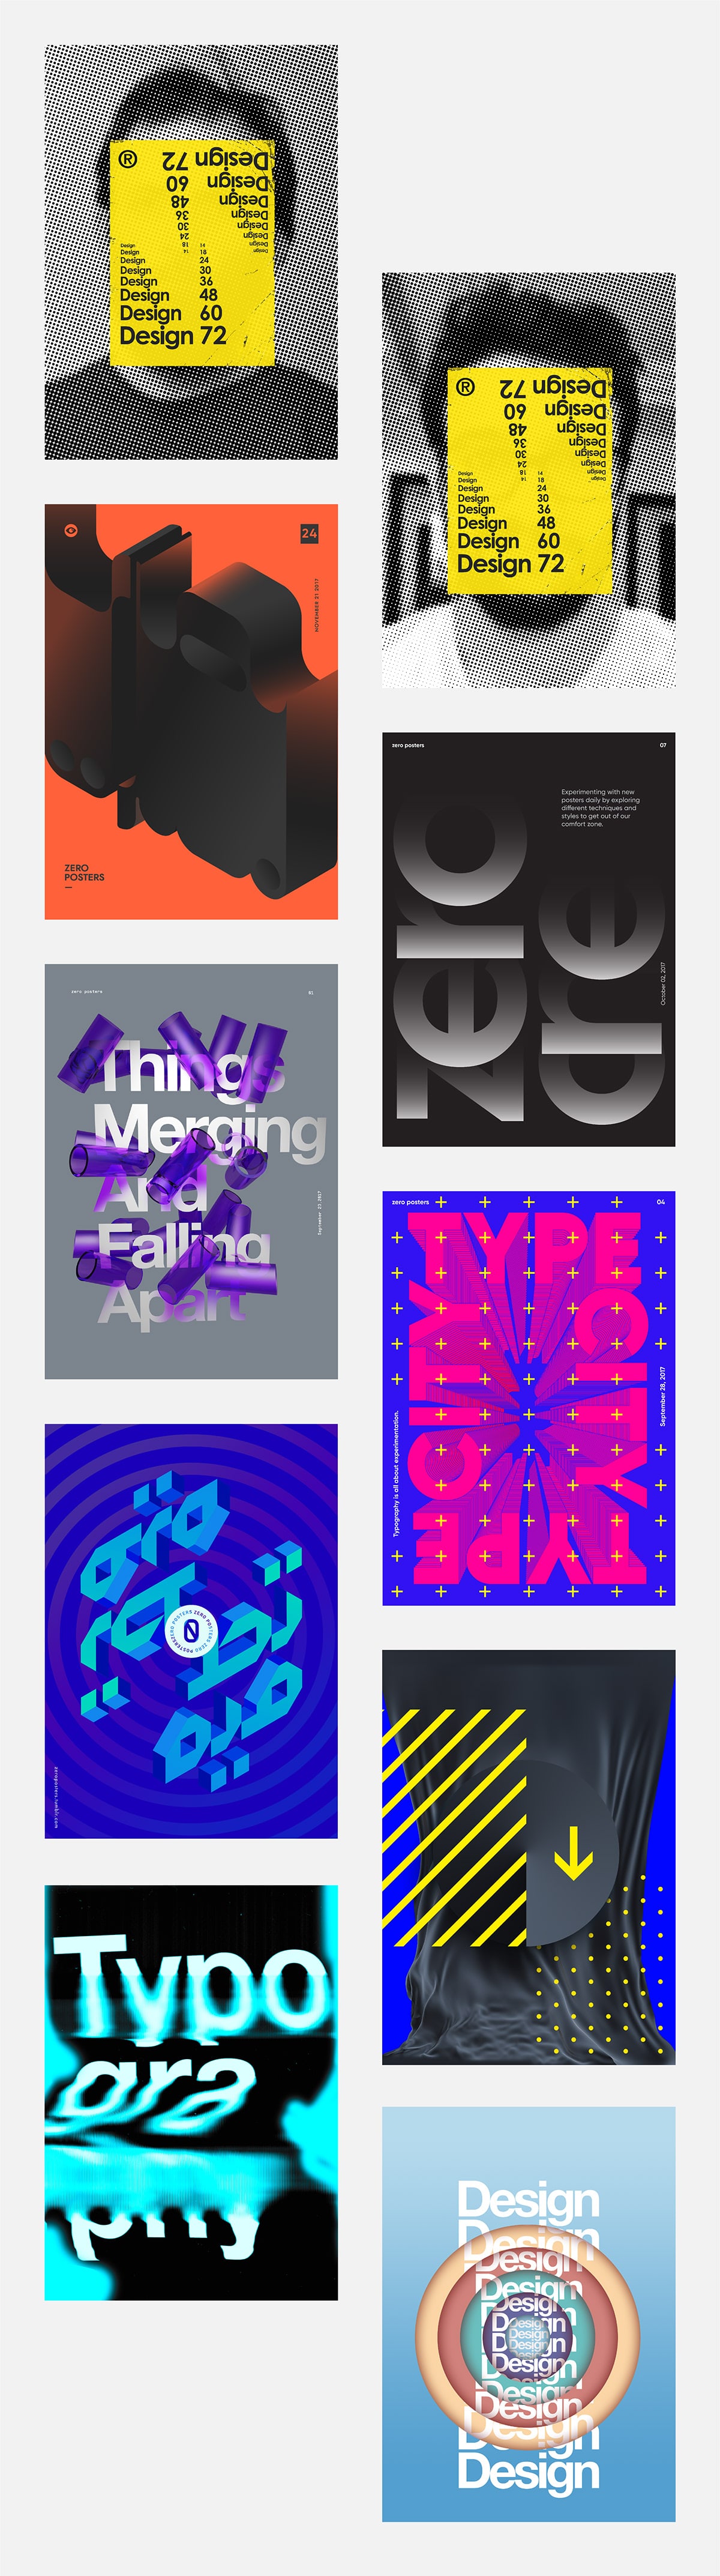 创意实验平台: Zero Posters新的海报设计形式探索